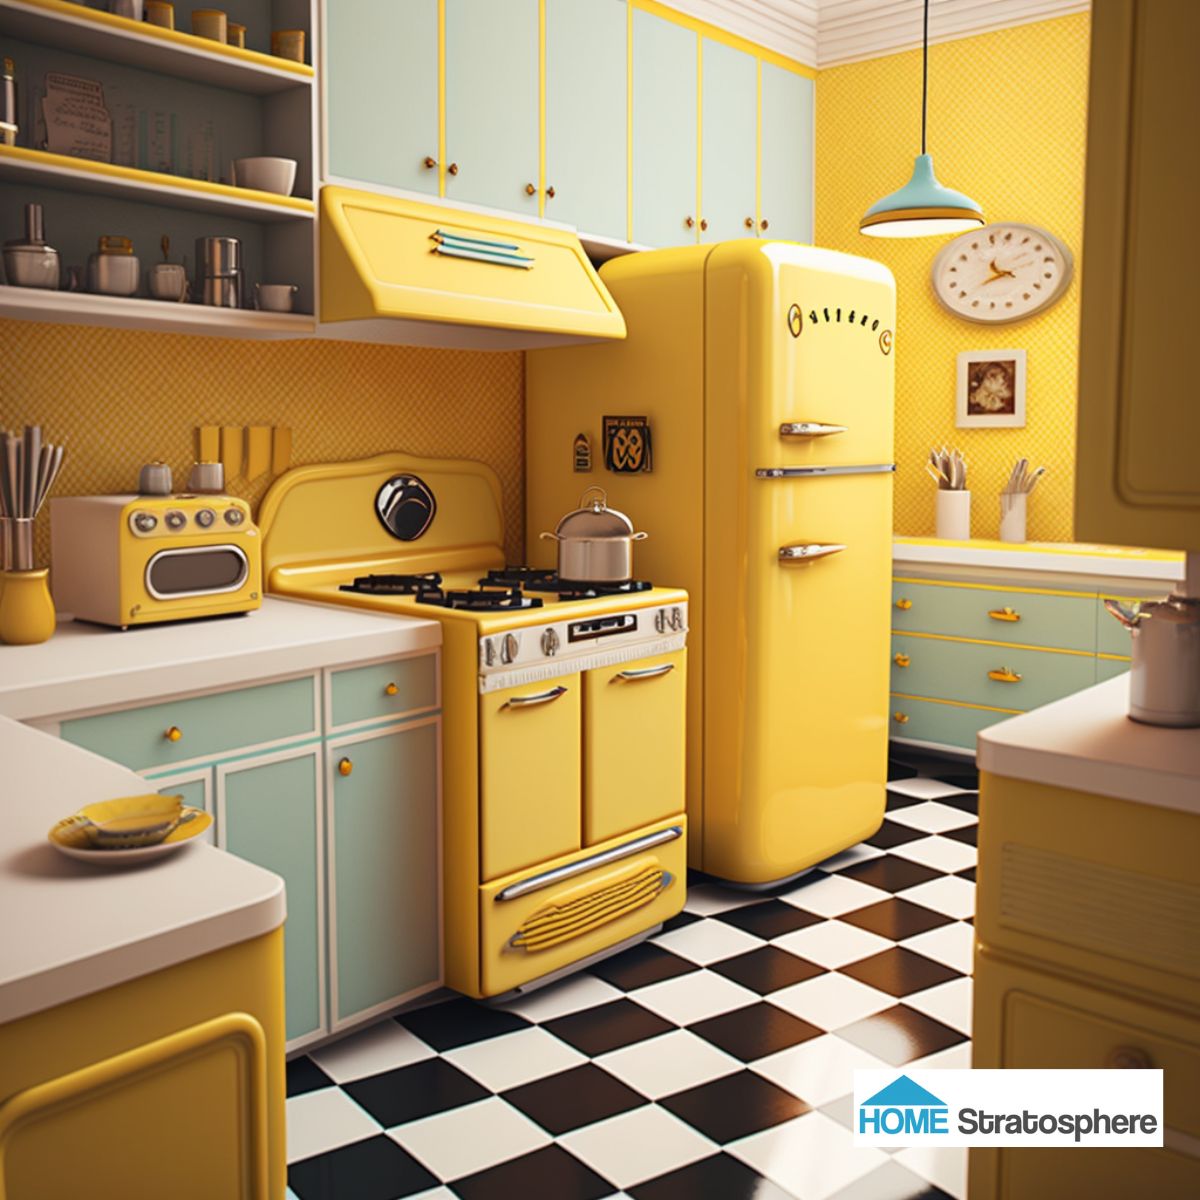 这个厨房的空间奇怪地收缩和扩张。像烤箱的设计和冰箱后面的架子这样的怪癖比比皆是。虽然我通常想在厨房里有很多台面空间，但这一个可以用得少一点。柔和的黄色和绿松石点缀在方格地板上，电器的选择与之相结合，提供复古的体验。